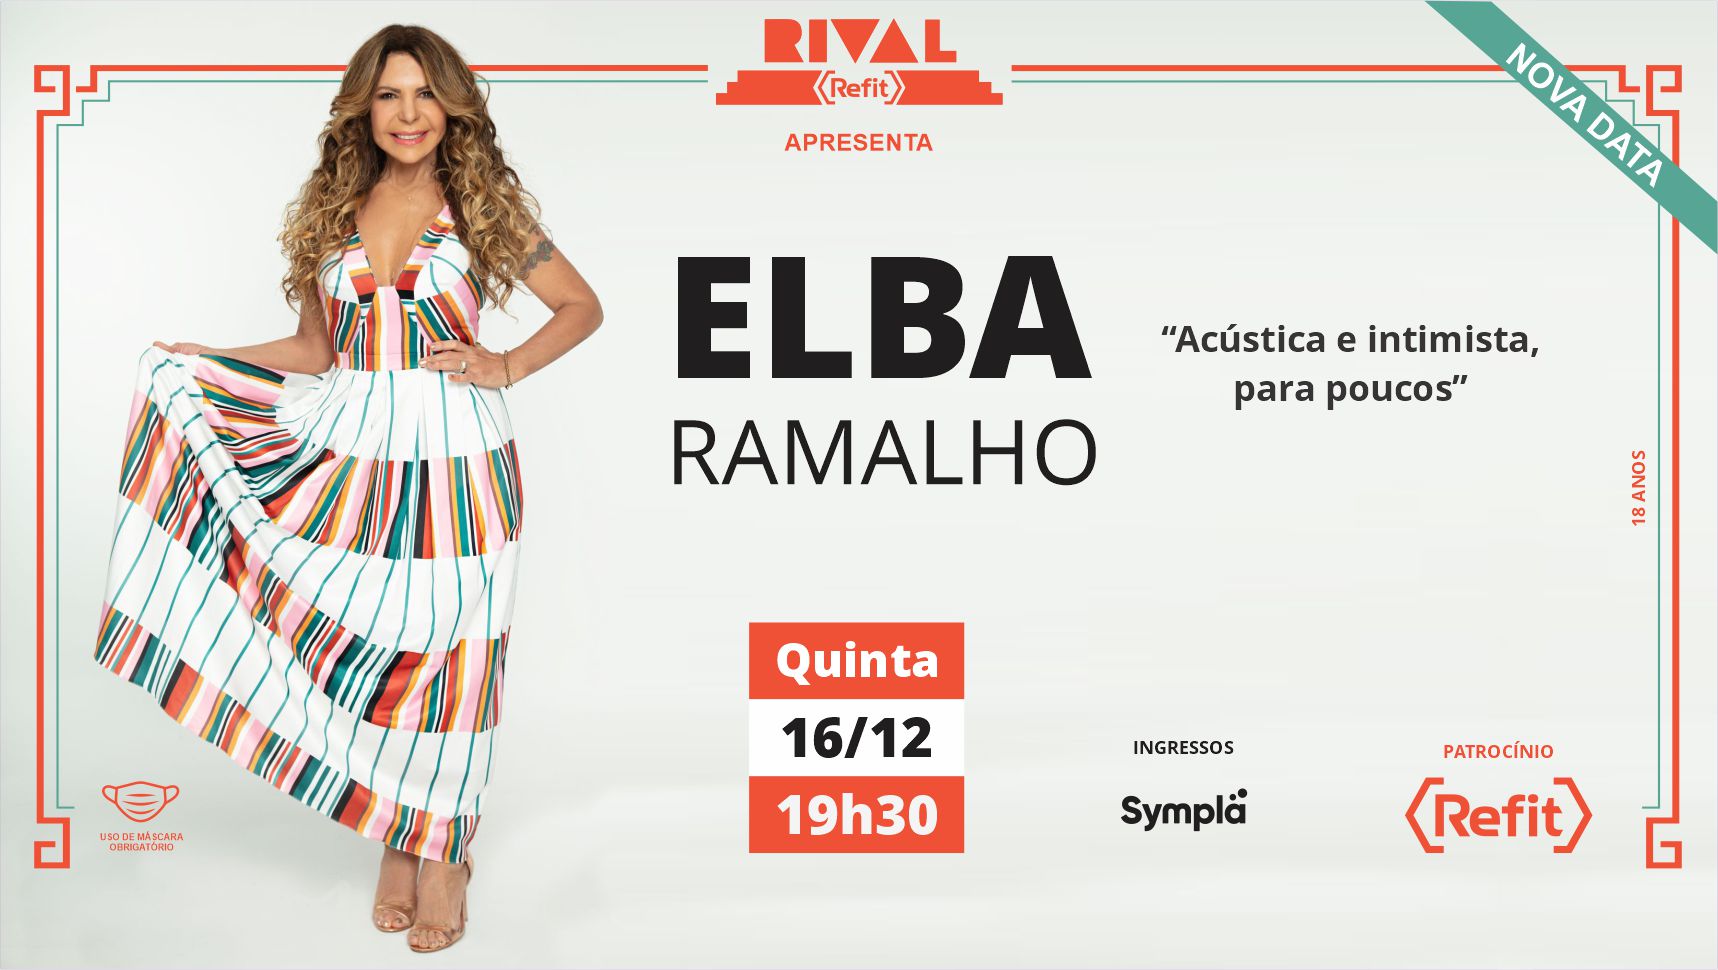 Elba Ramalho Teatro Rival Refit